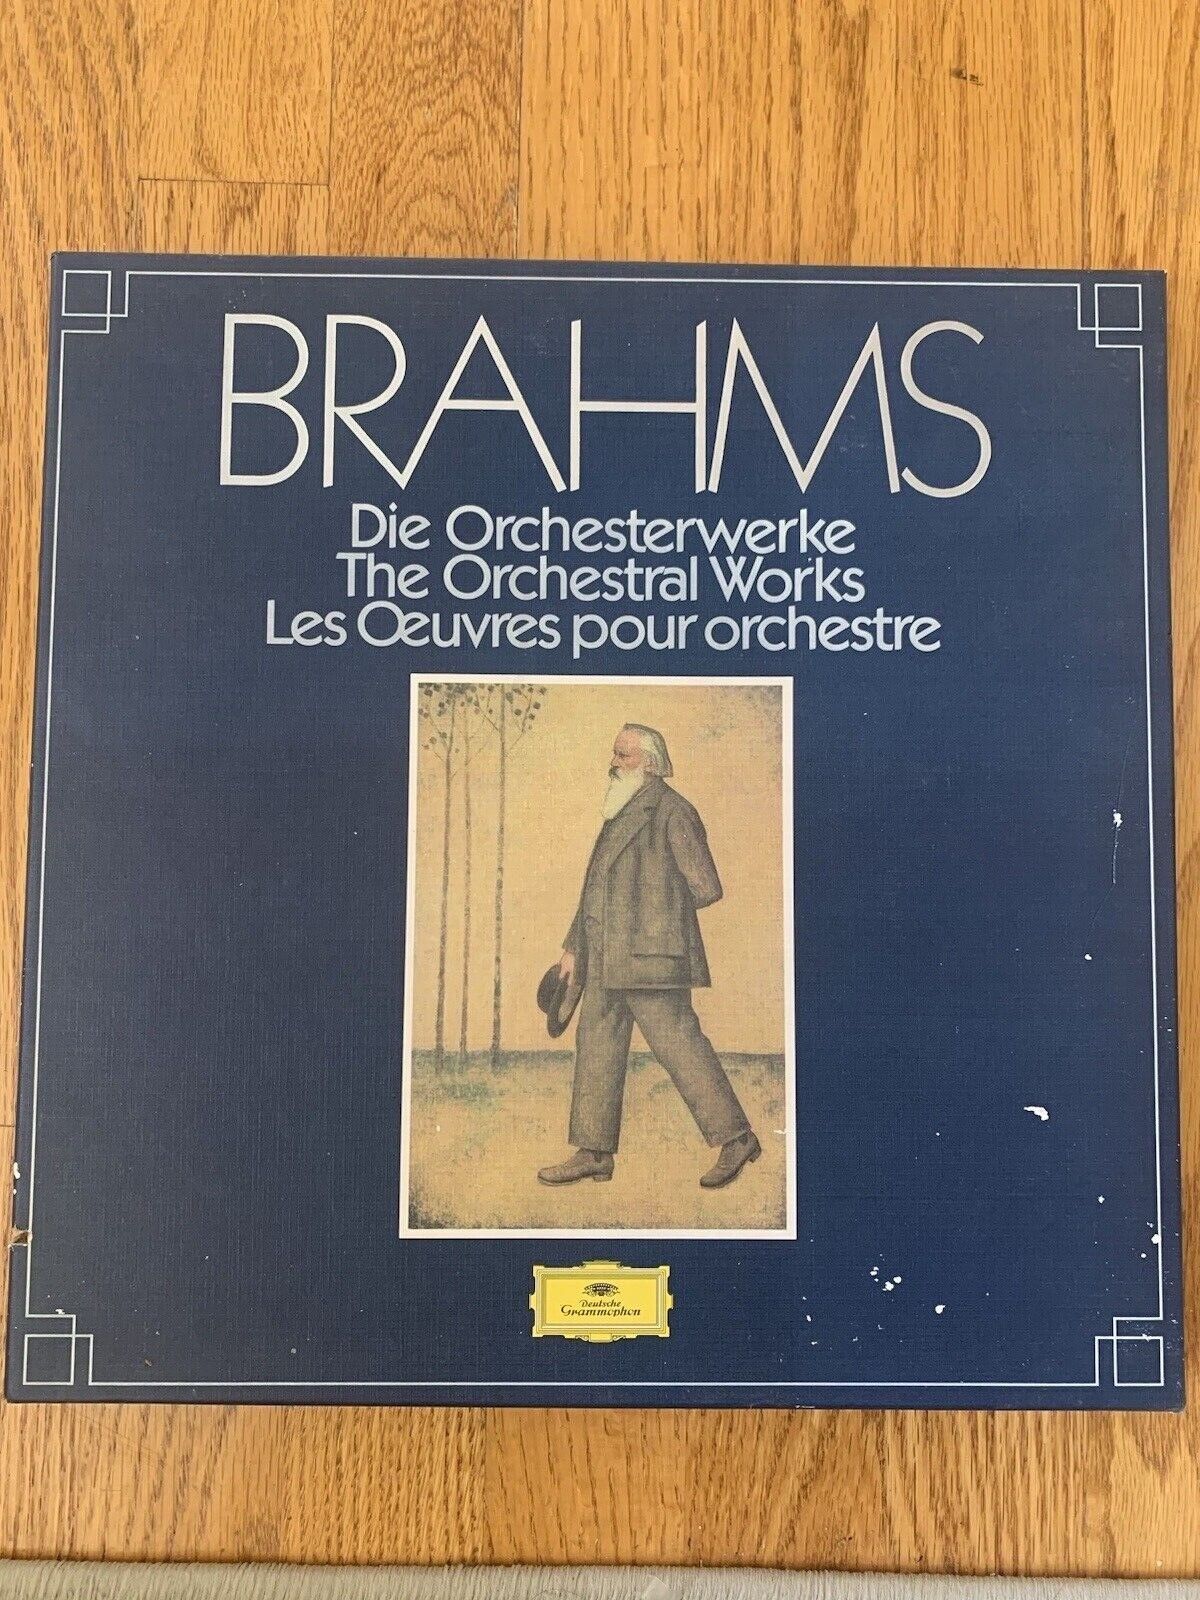 BRAHMS/ Bernstein / Böhm - Orchestral Works - 7LP Box Set 1983 DG 2740275 * /NM